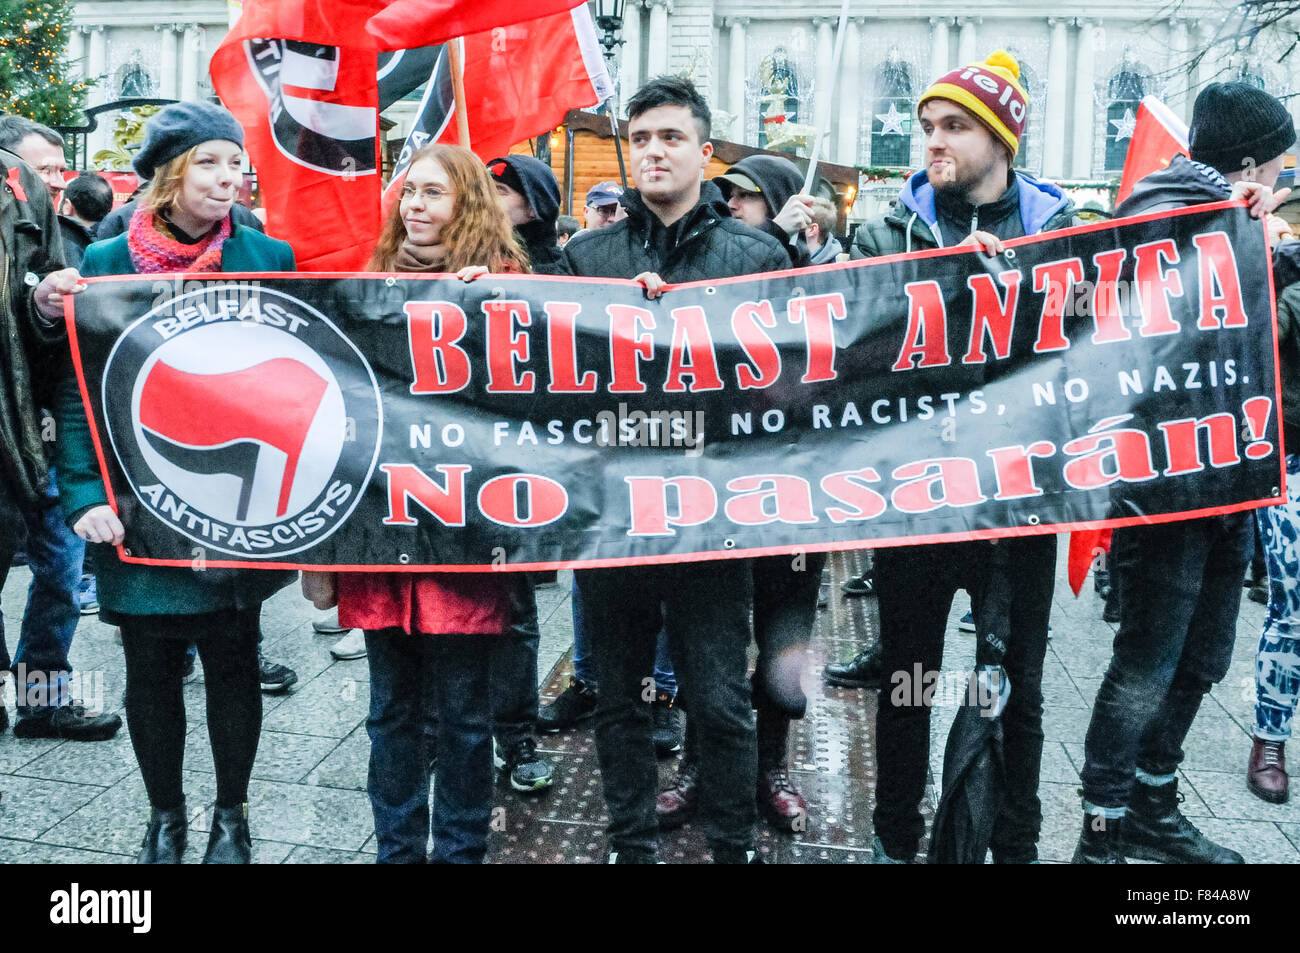 Belfast, Irlanda del Nord. 05 dic 2015 - Pro-sostenitori dei rifugiati da 'Belfast Antifa' si riuniscono per protestare contro la coalizione protestante di anti-rifugiati rally, con il messaggio 'No fascisti. No razzisti. No nazisti". Mentre essi stavano protestando un piccolo gruppo di neo-nazisti appreared e ha dato un saluto nazista. Credito: Stephen Barnes/Alamy Live News Foto Stock